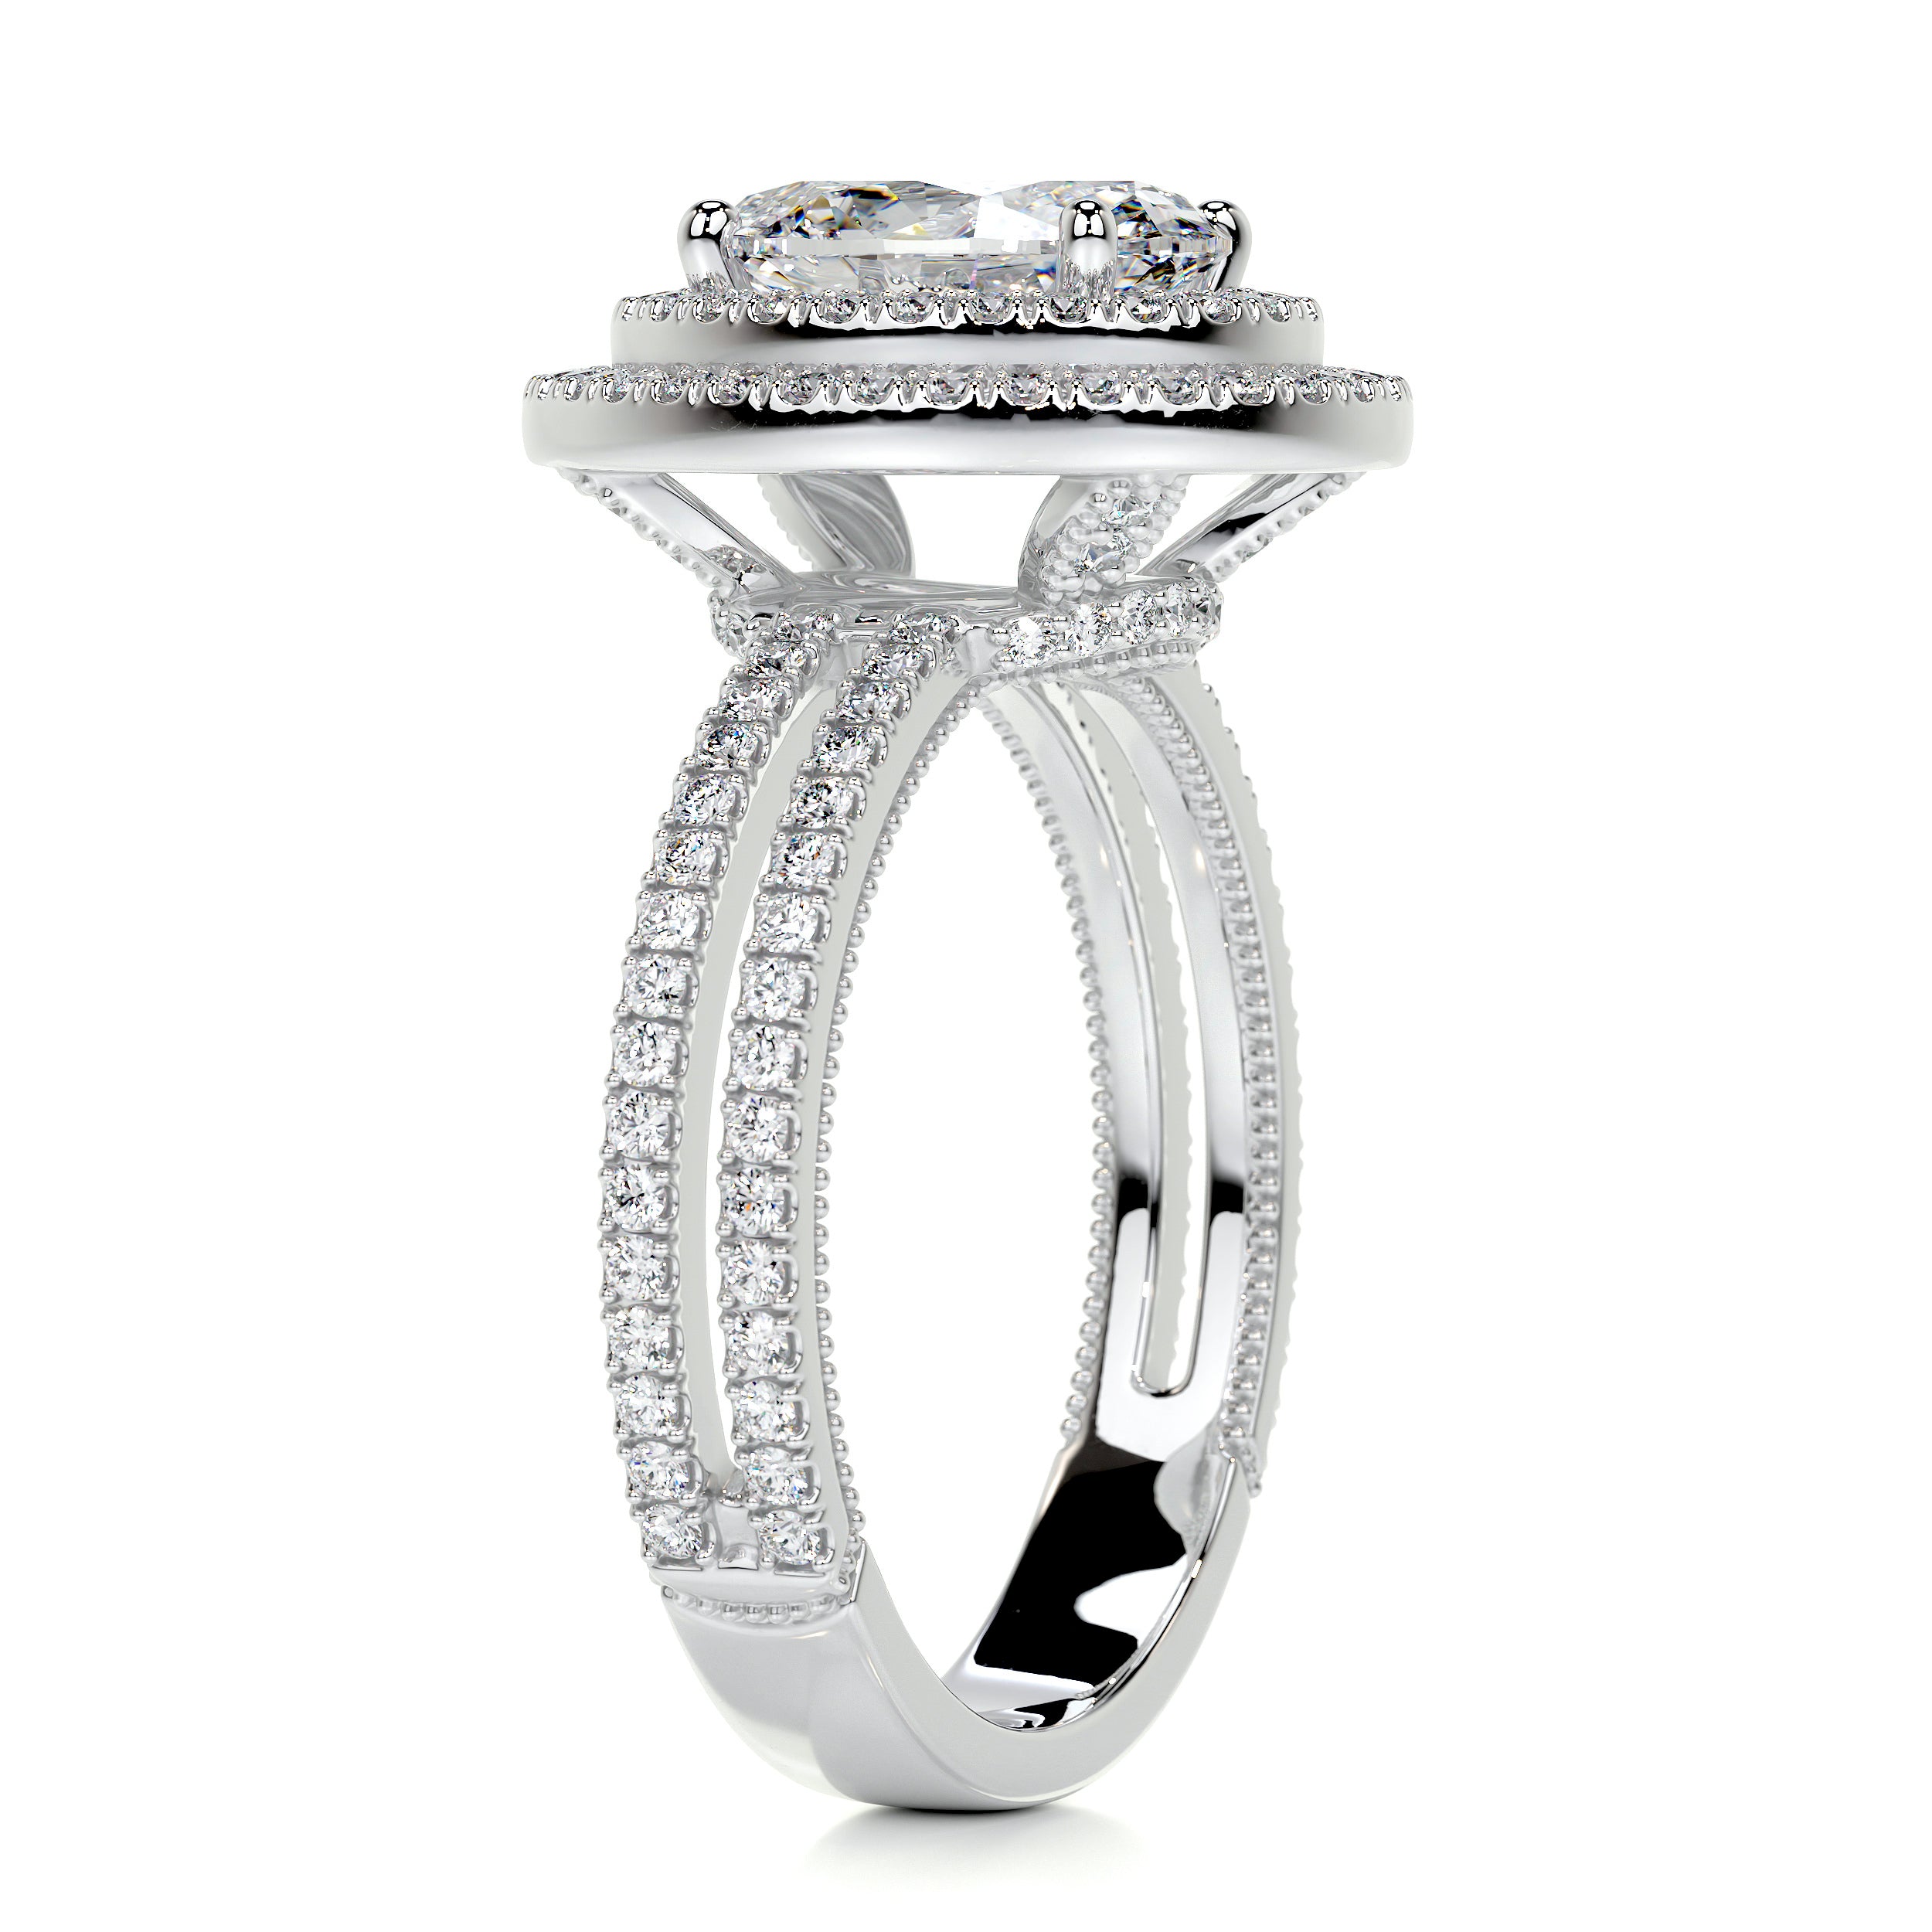 Willa Diamond Engagement Ring   (3 Carat) -Platinum